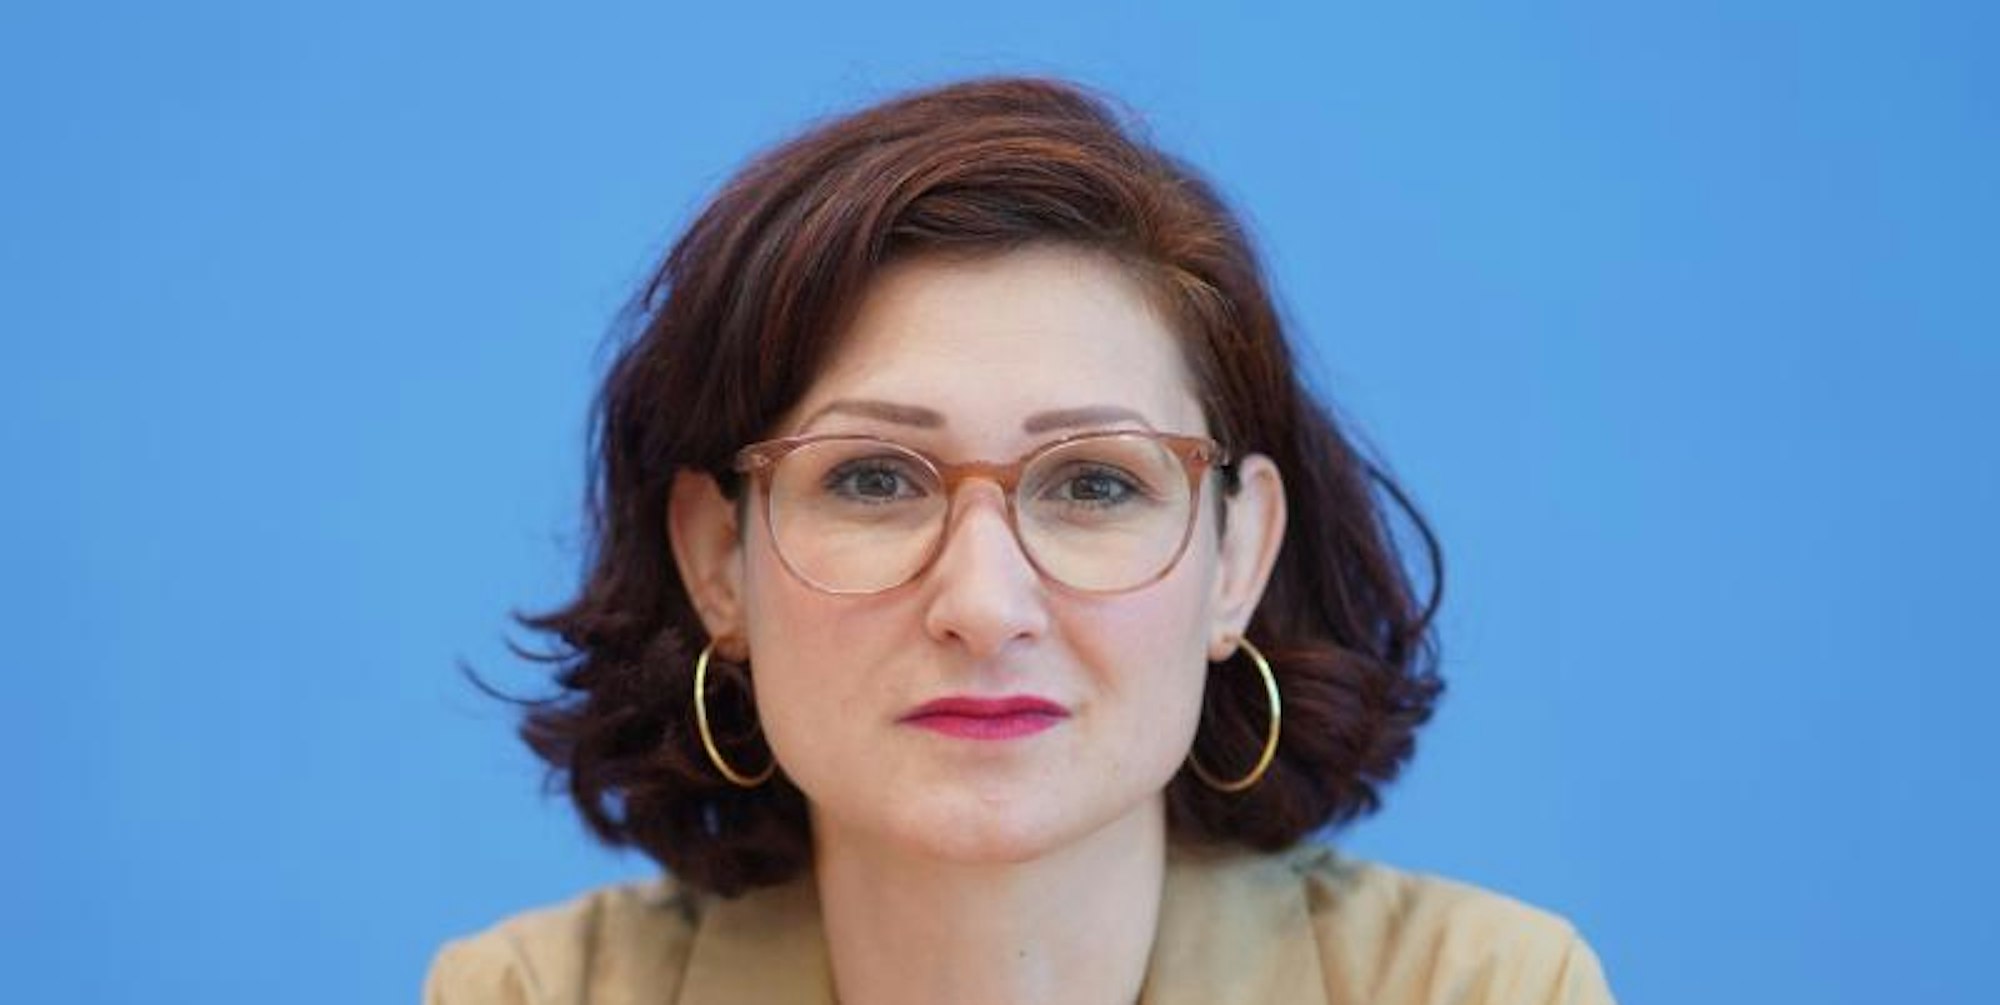 Ferda Ataman wurde als Antidiskriminierungsbeauftragte vorgeschlagen.